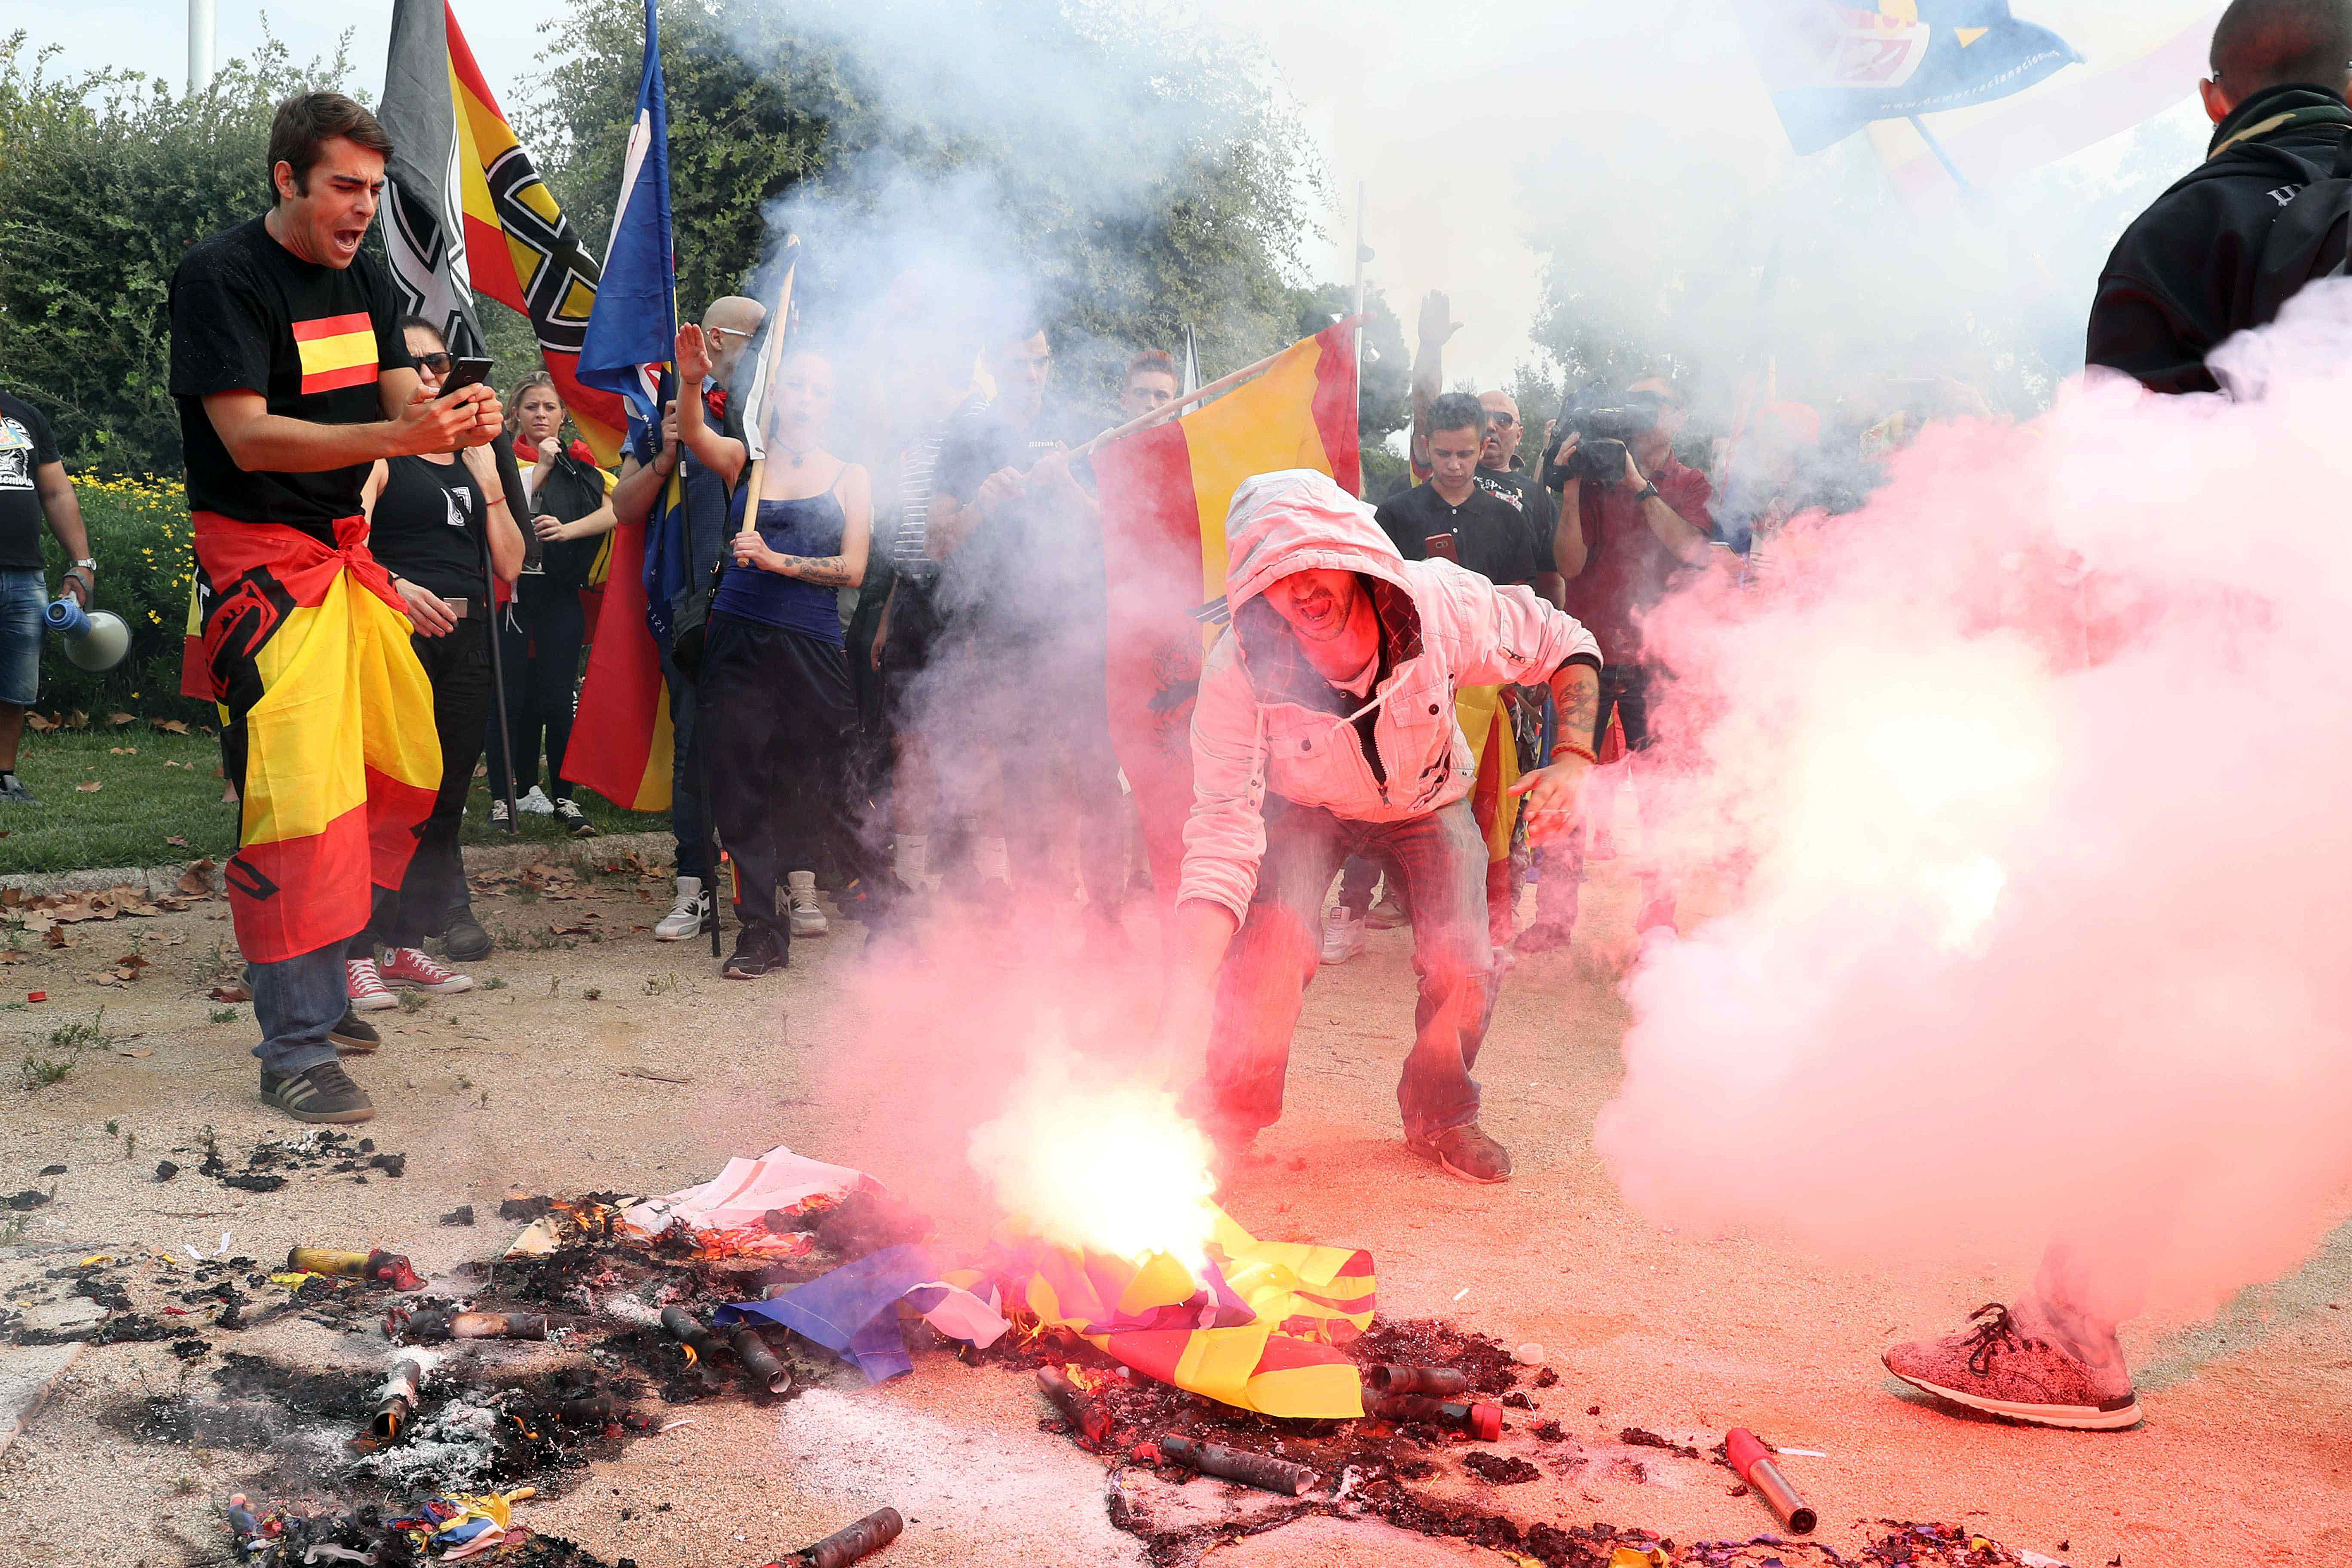 Fotografía de una manifestación de colectivos de ultraderecha portan banderas preconstitucionales mientras queman banderas esteladas